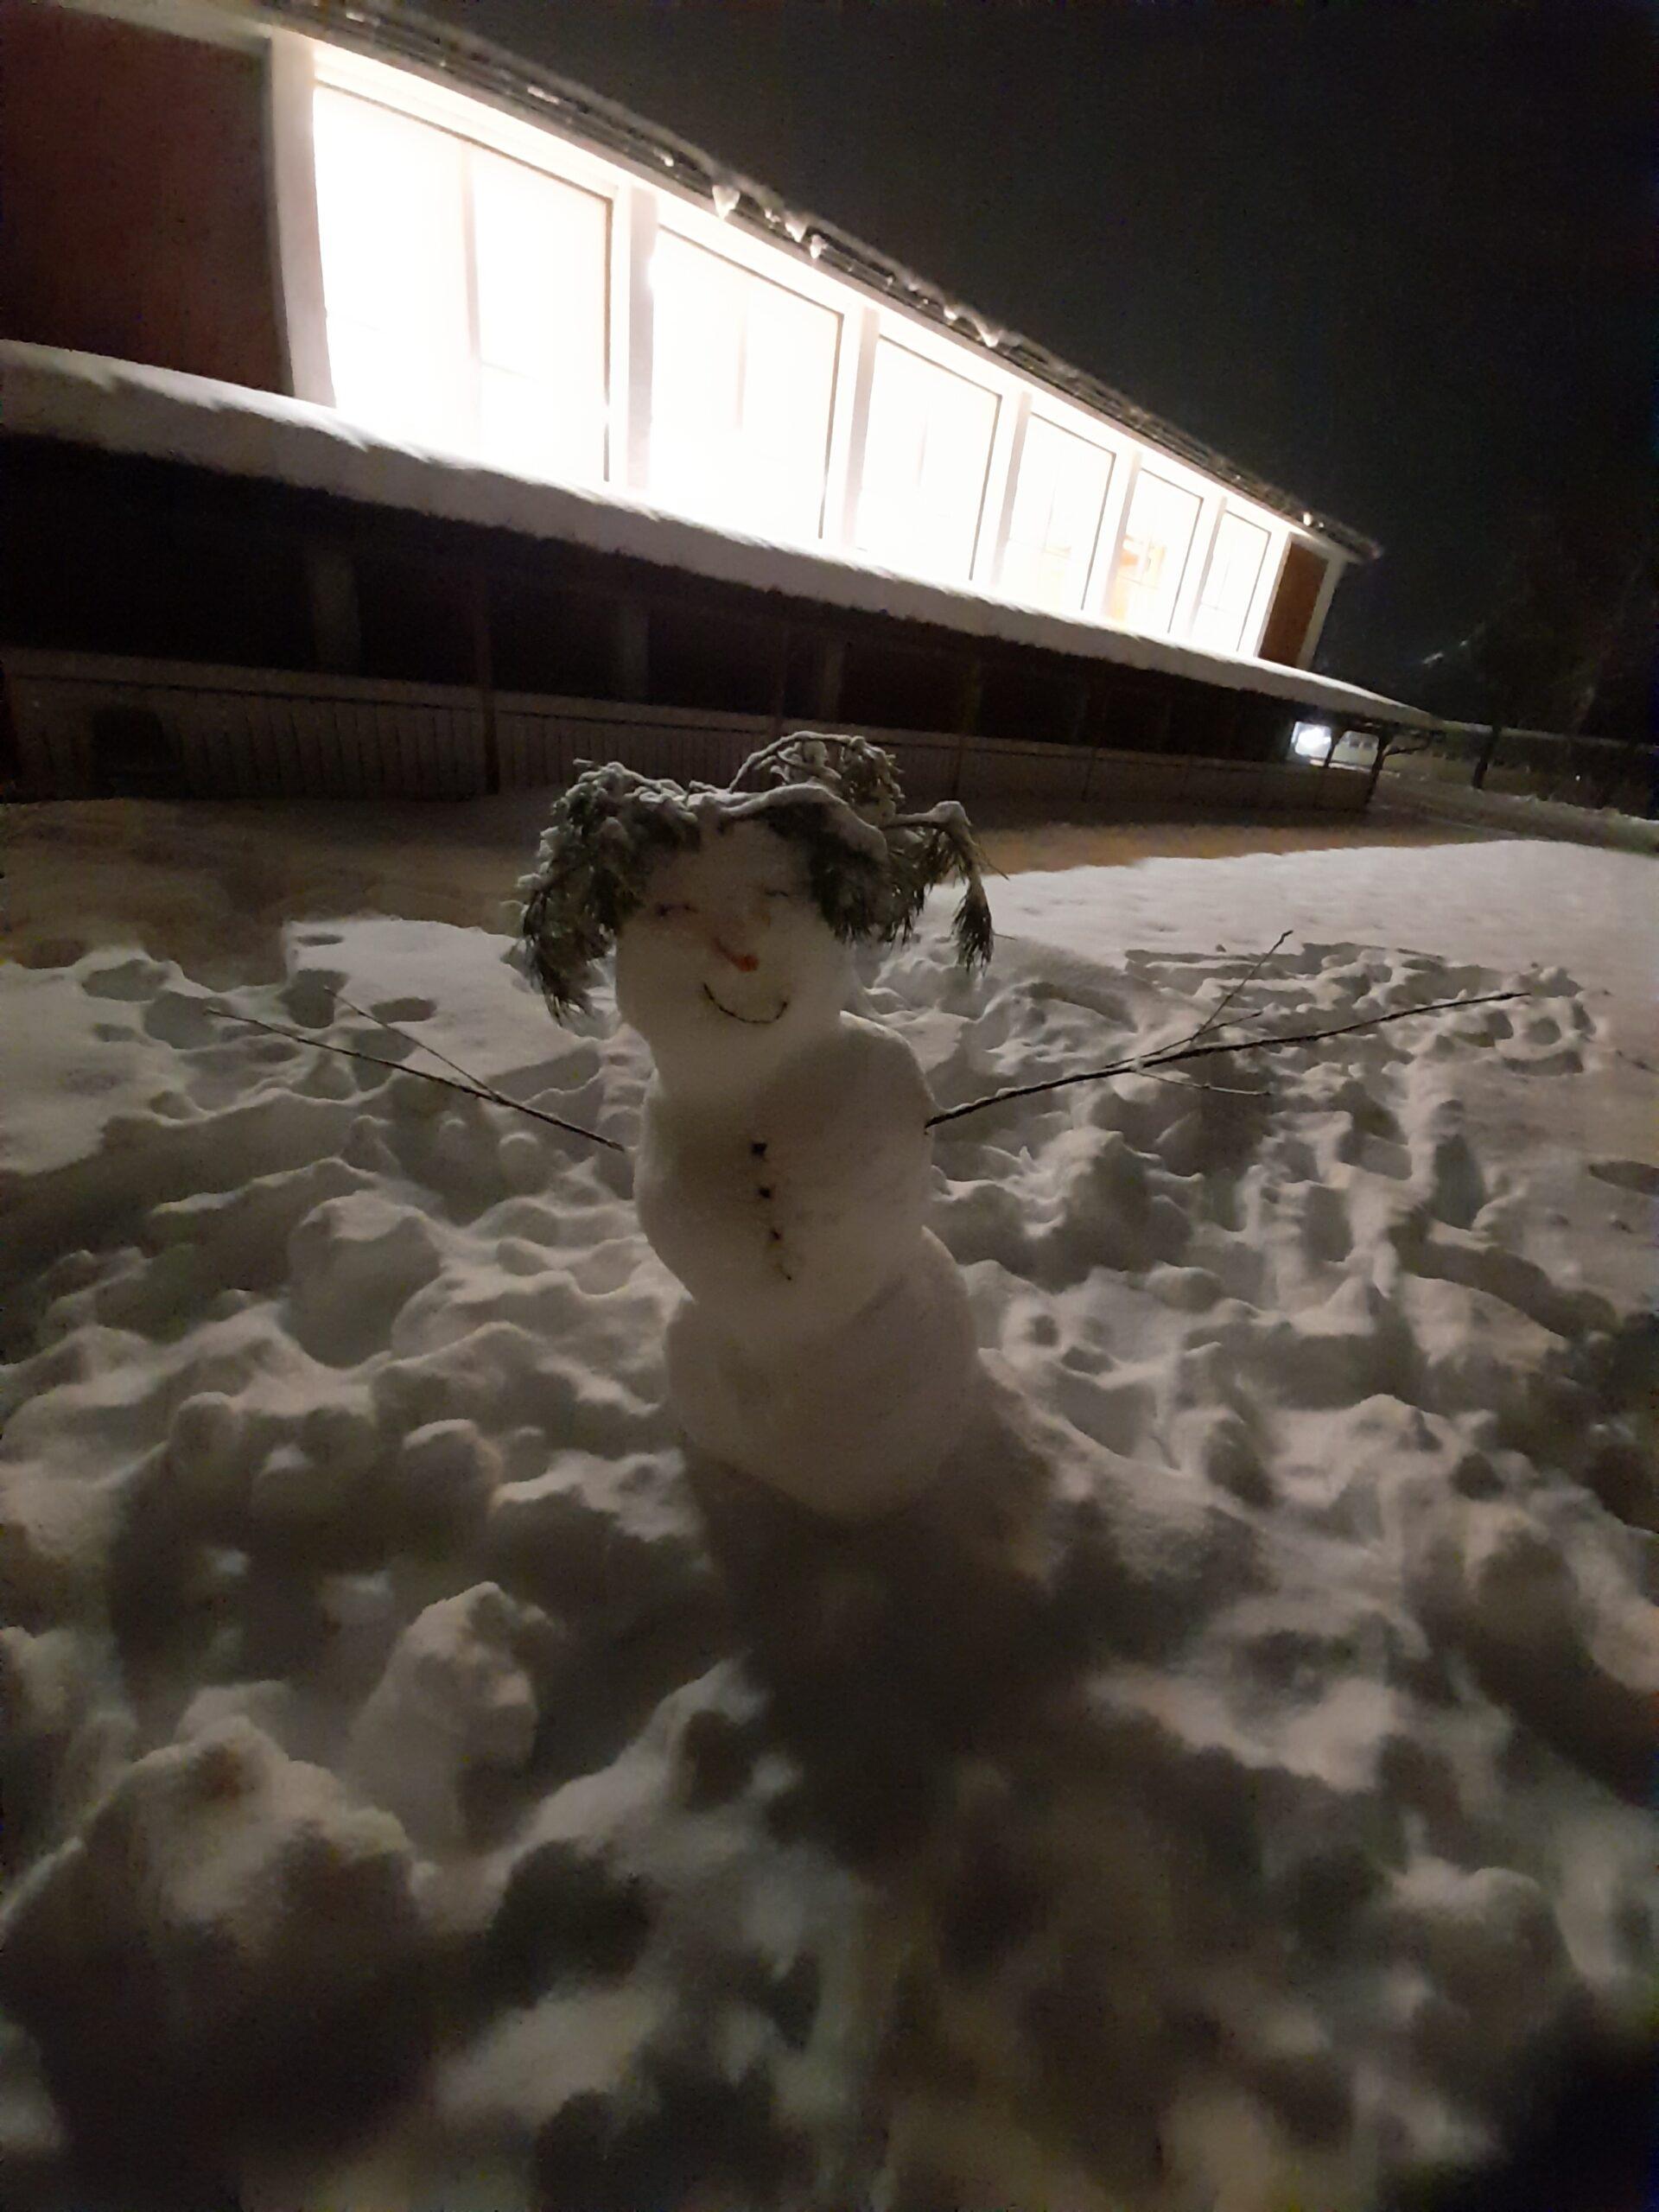 Snødag ved Evjeklinikken - snømenn i ulike kreative fasonger